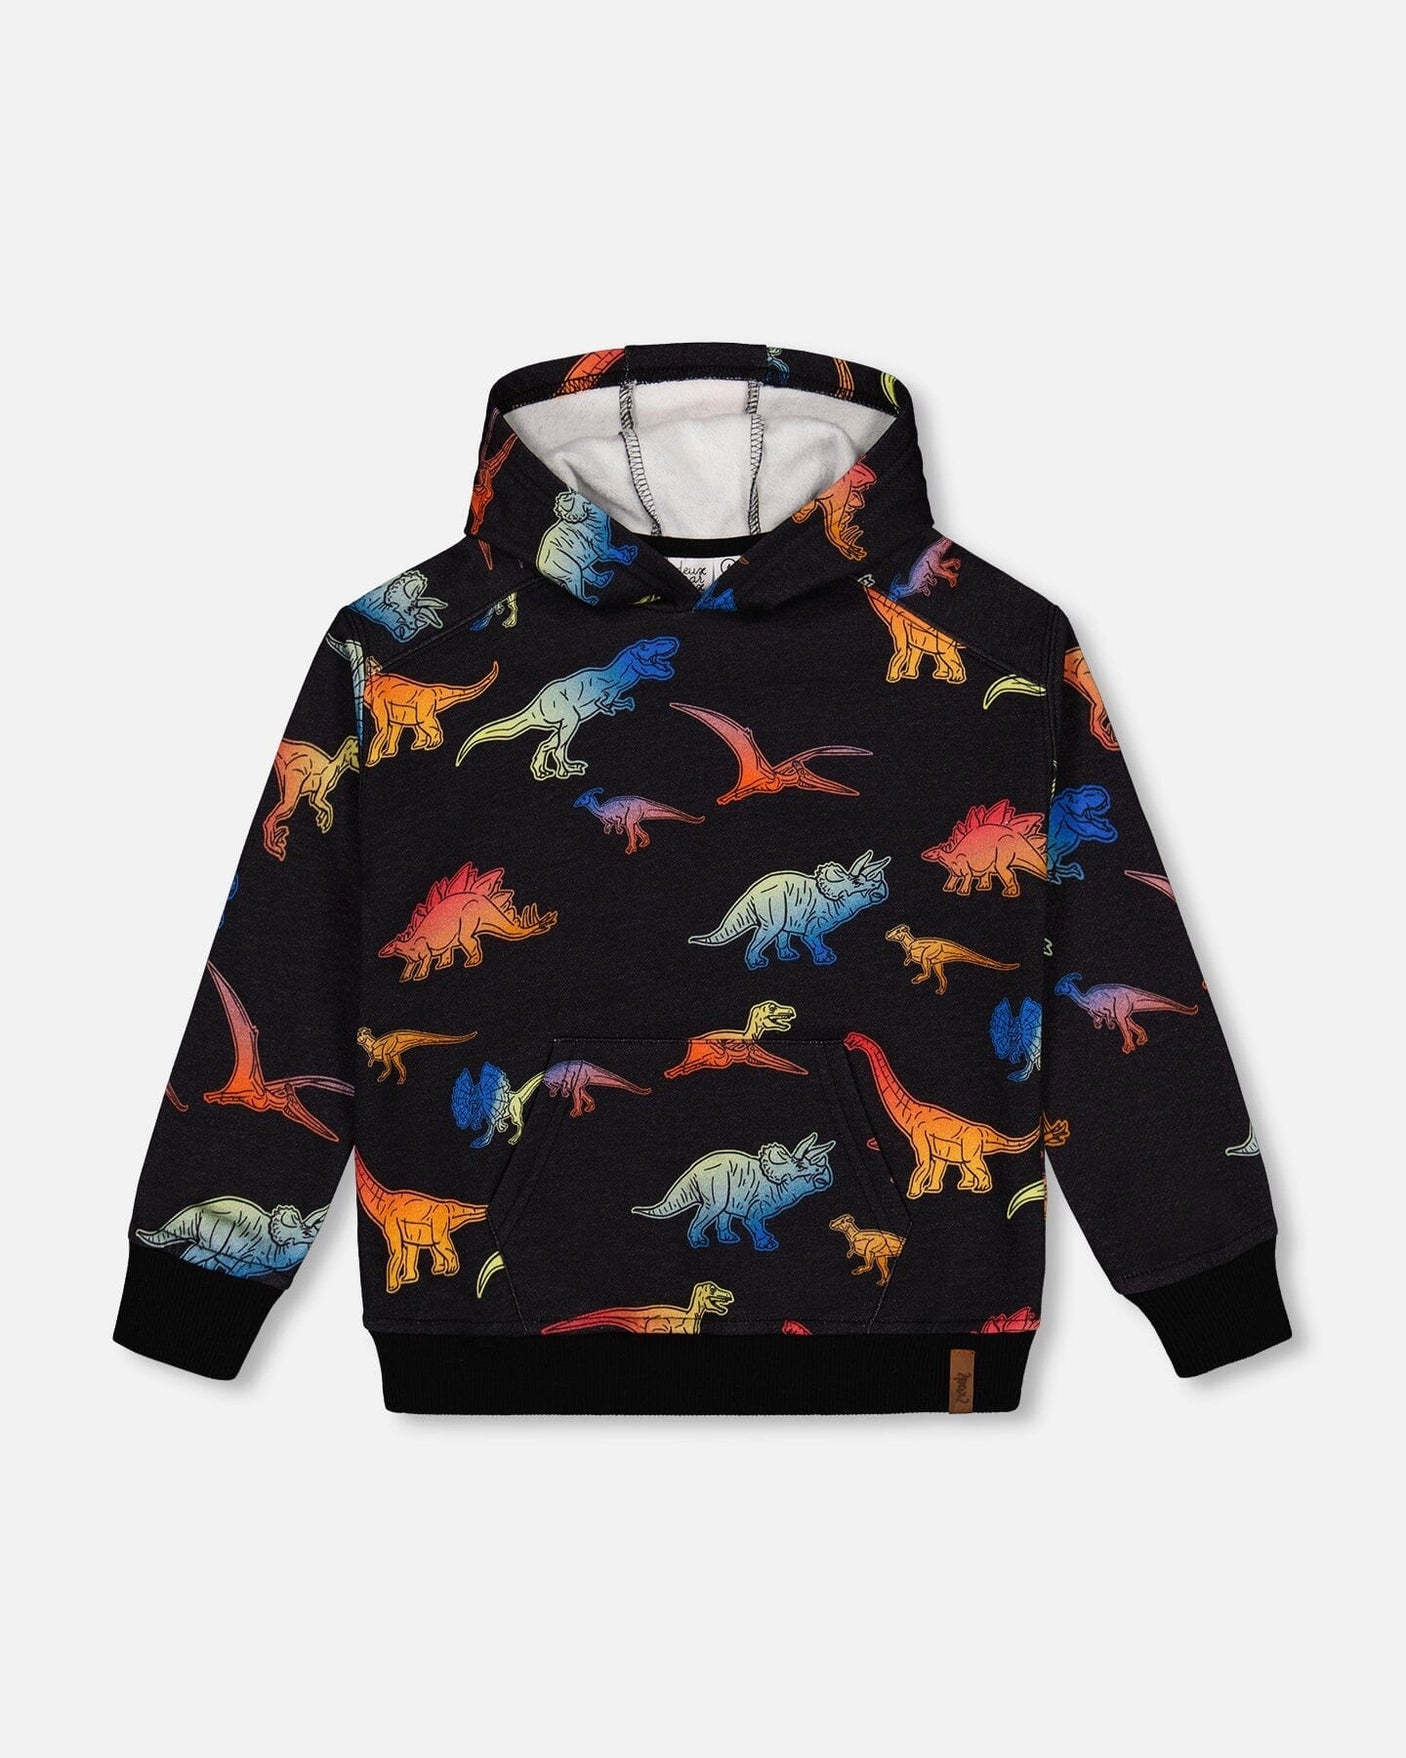 Printed Multicolor Dinosaur Fleece Hoodie Black-0